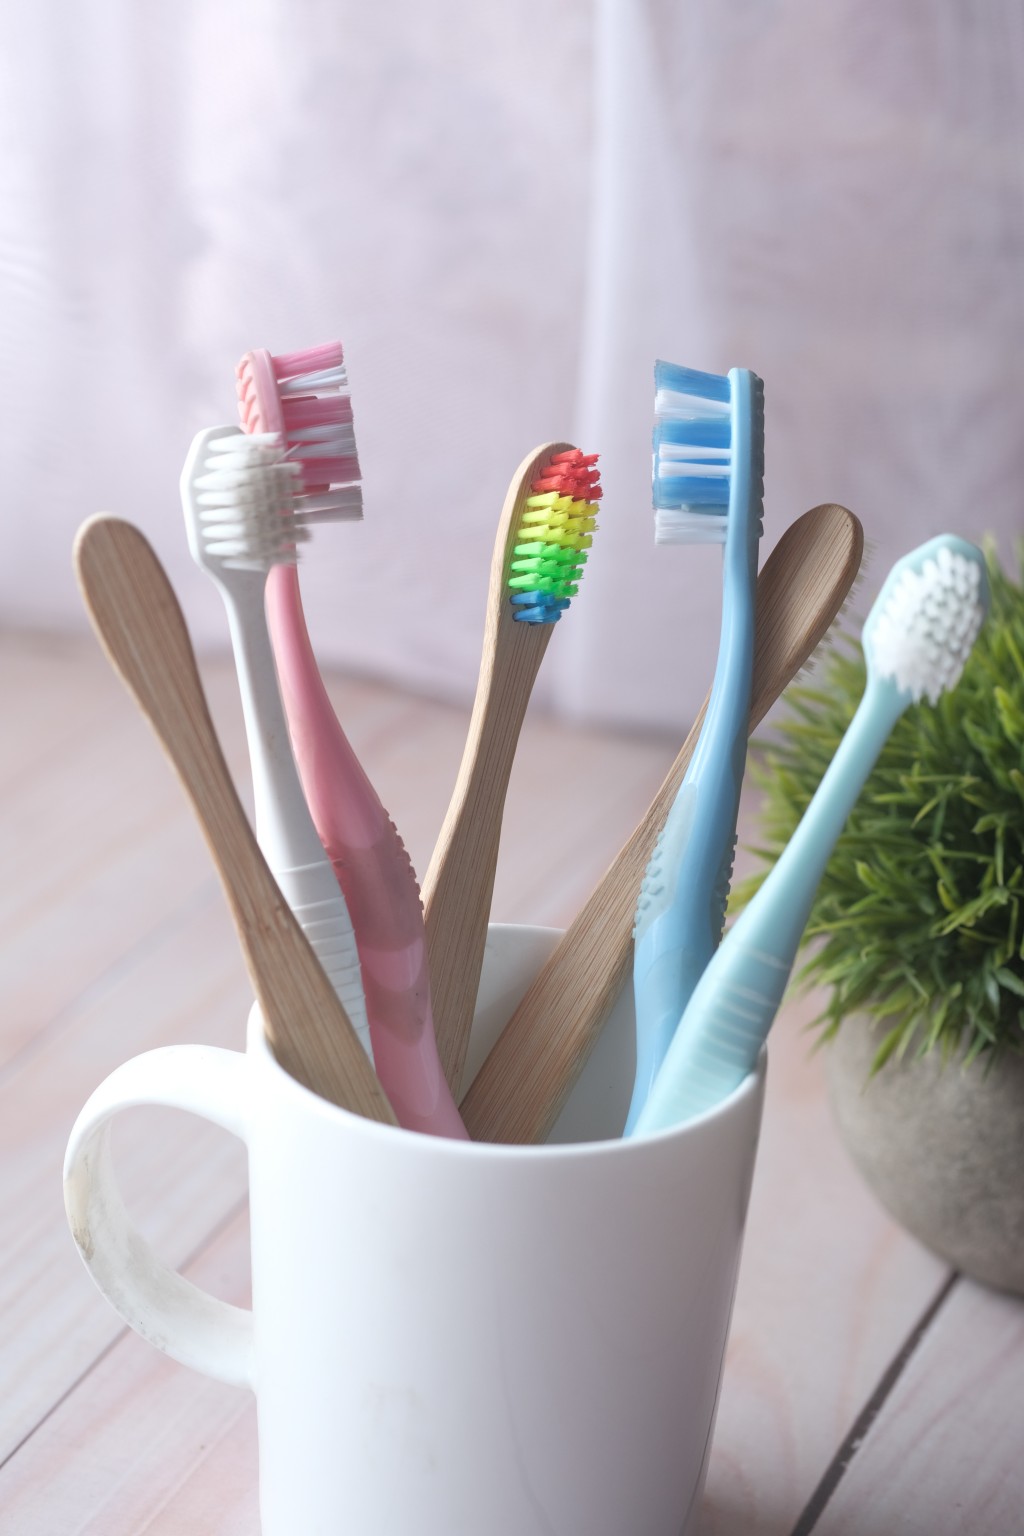 研究指牙刷柄的细菌量比起牙刷刷毛还多。 unsplash